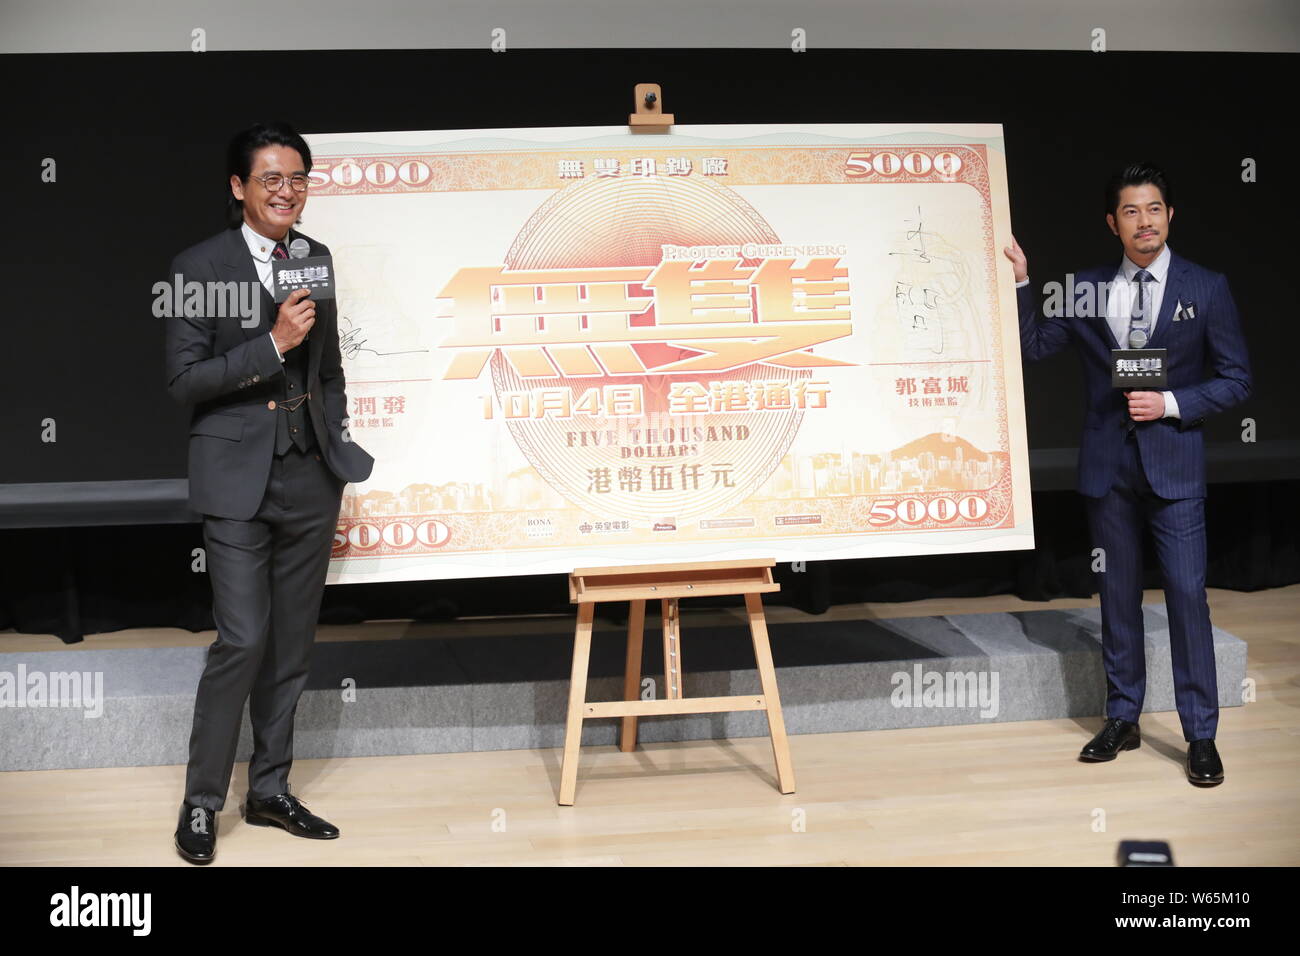 Actor de Hong Kong Chow Yun-fat, anteriormente conocido como Donald Chow, izquierda, y el cantante y actor Aaron Kwok Fu-shing asistir a una conferencia de prensa para la nueva película Foto de stock